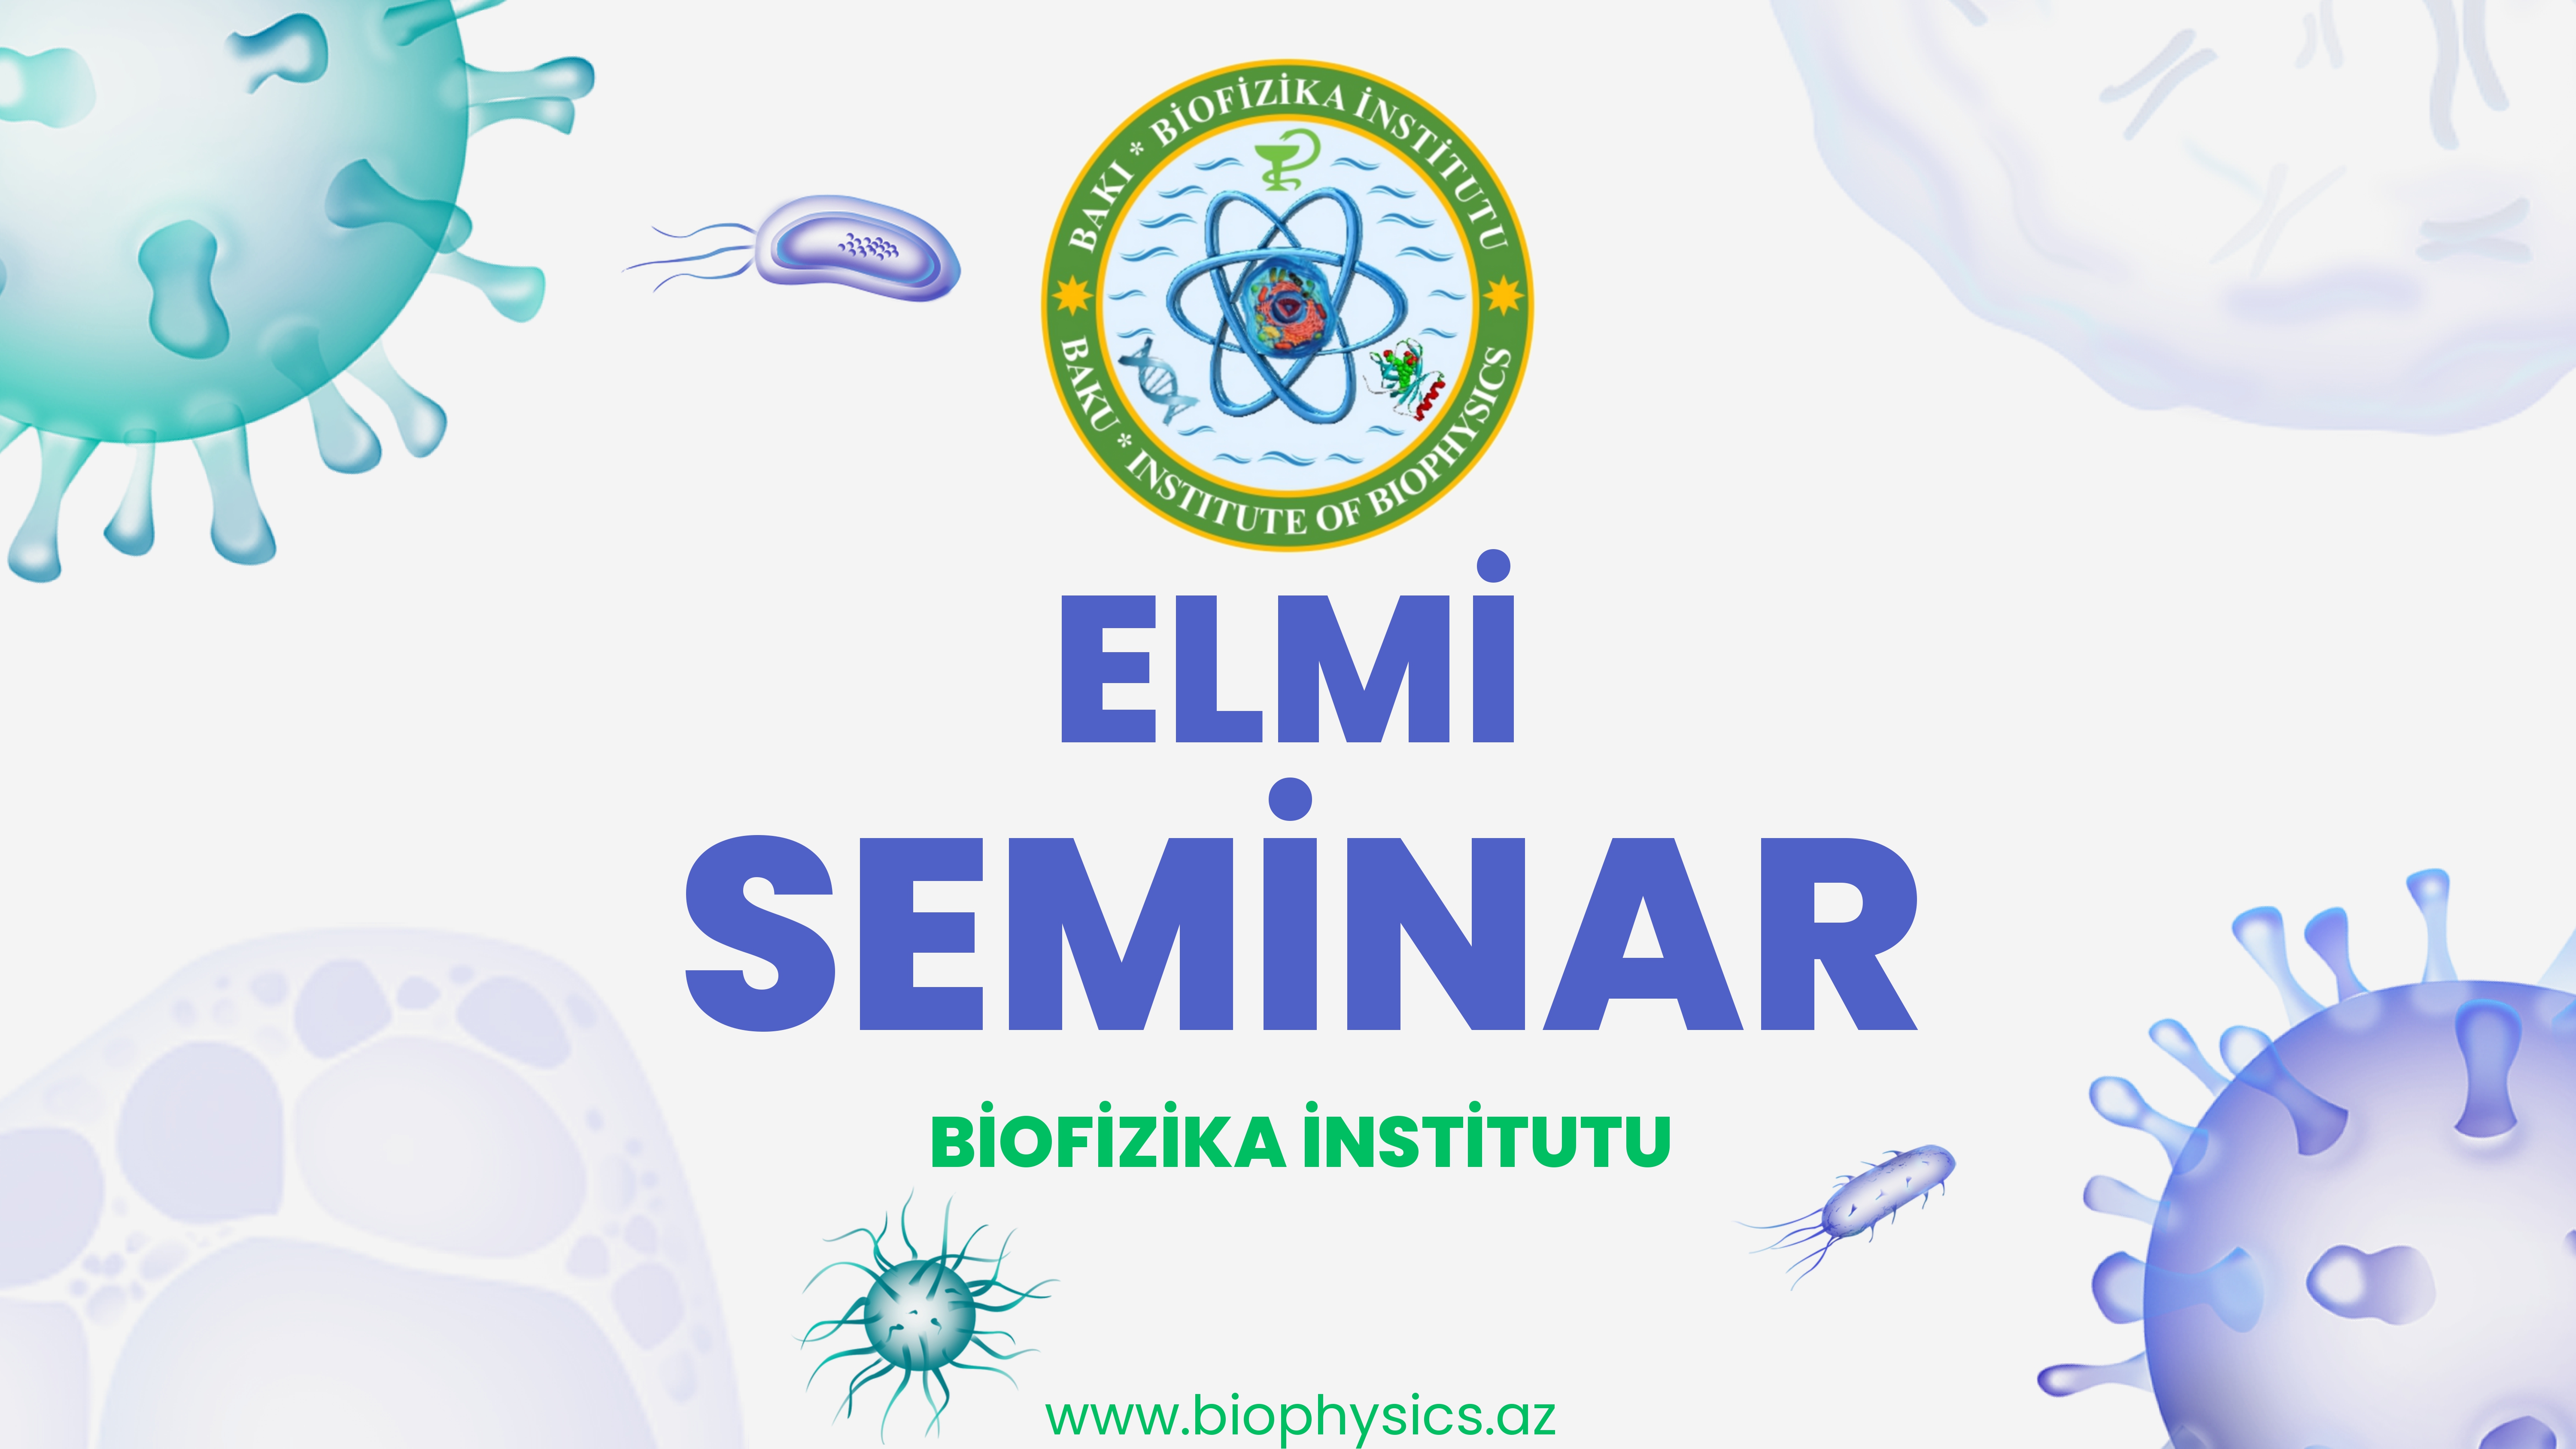 Biofizika İnstitutunda “SCOPUS elmmetrik bazasından effektiv istifadə” mövzusunda maarifləndiri seminar keçiriləcəkdir